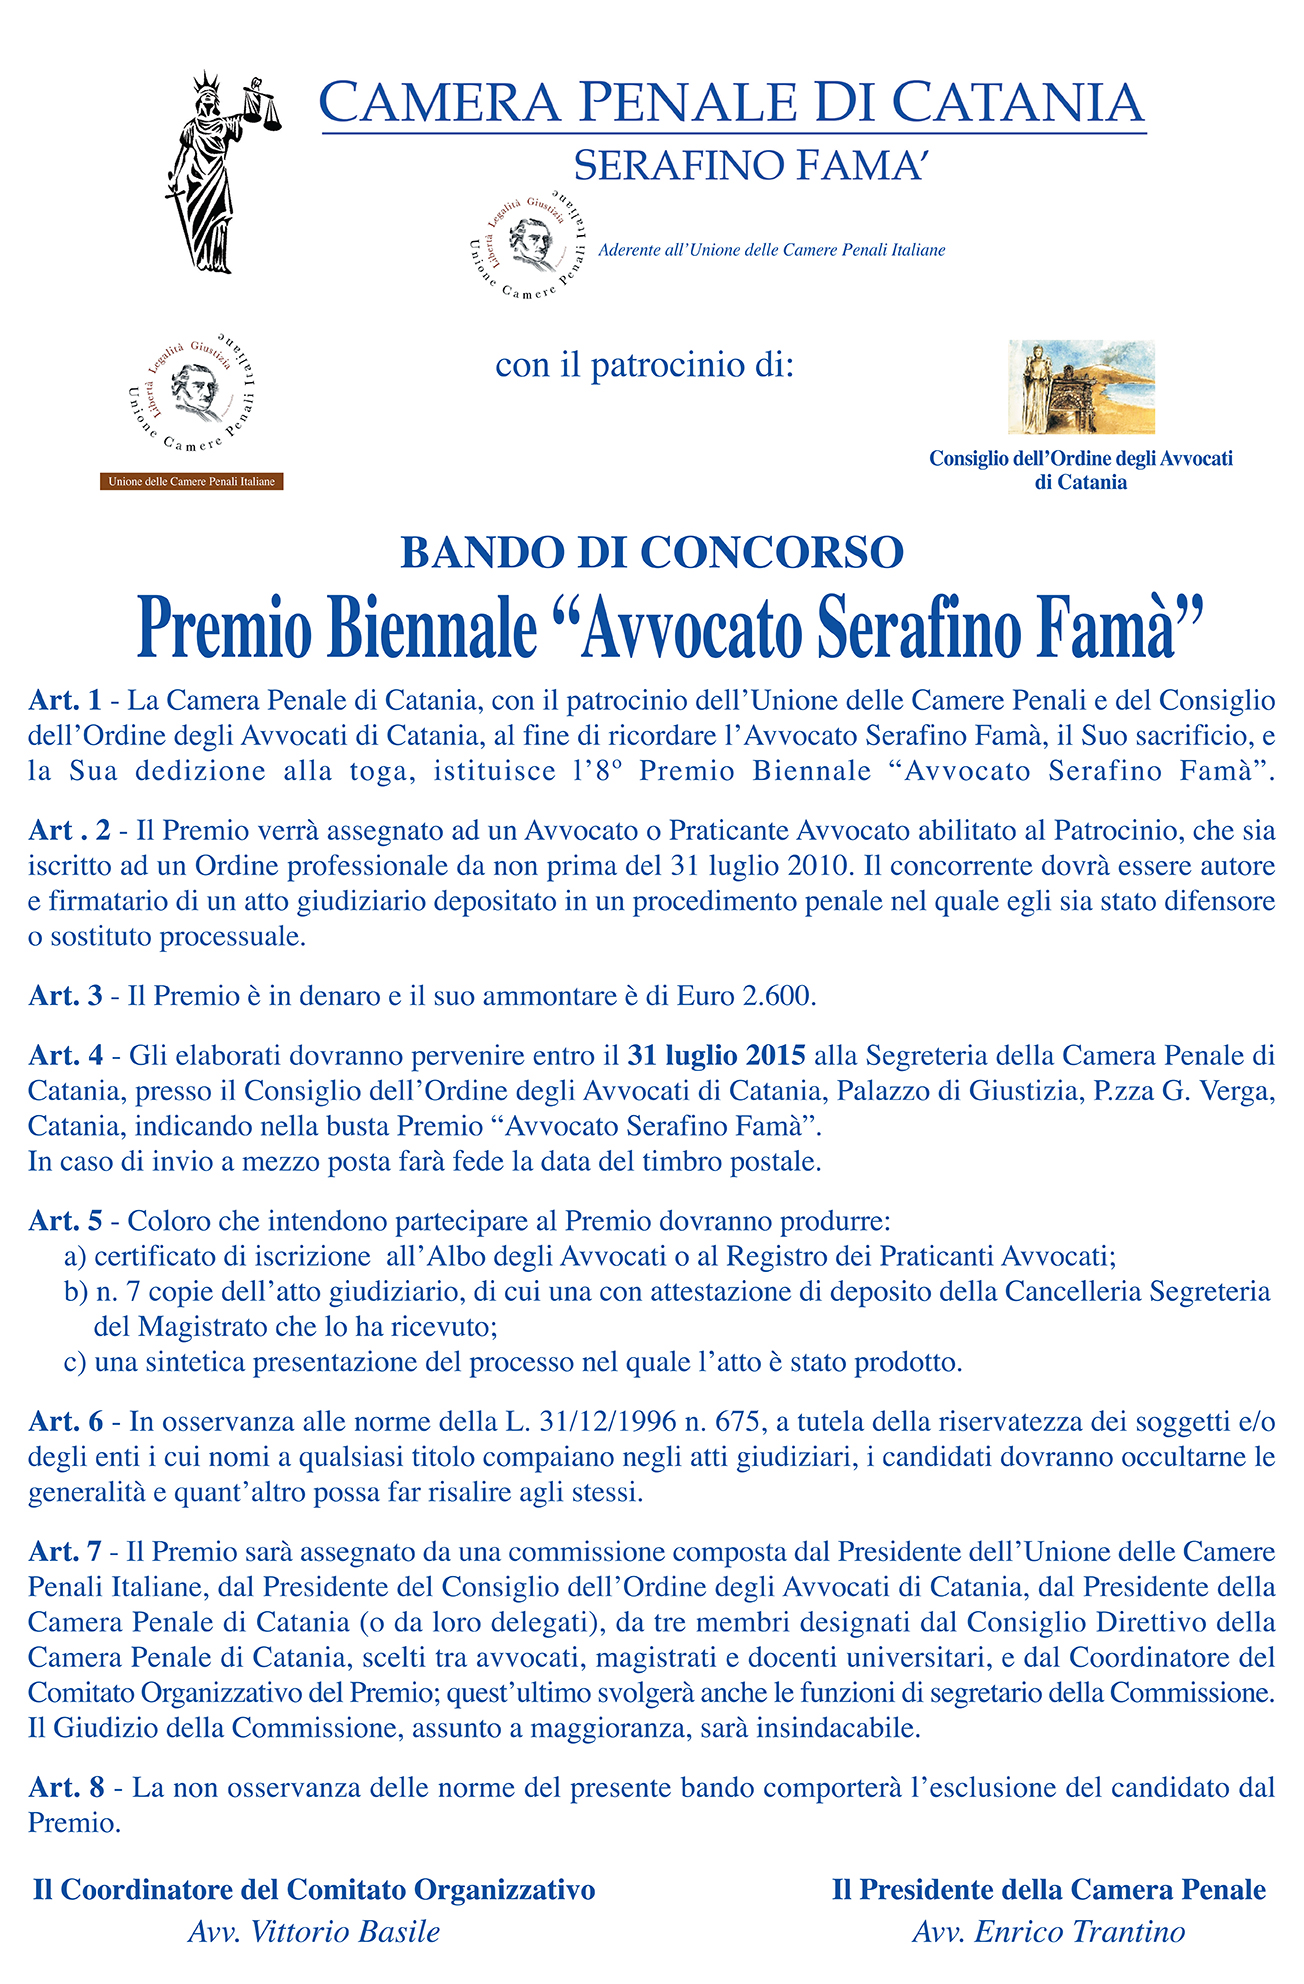 Bando di concorso al Premio biennale 'Avvocato Serafino Famà'.